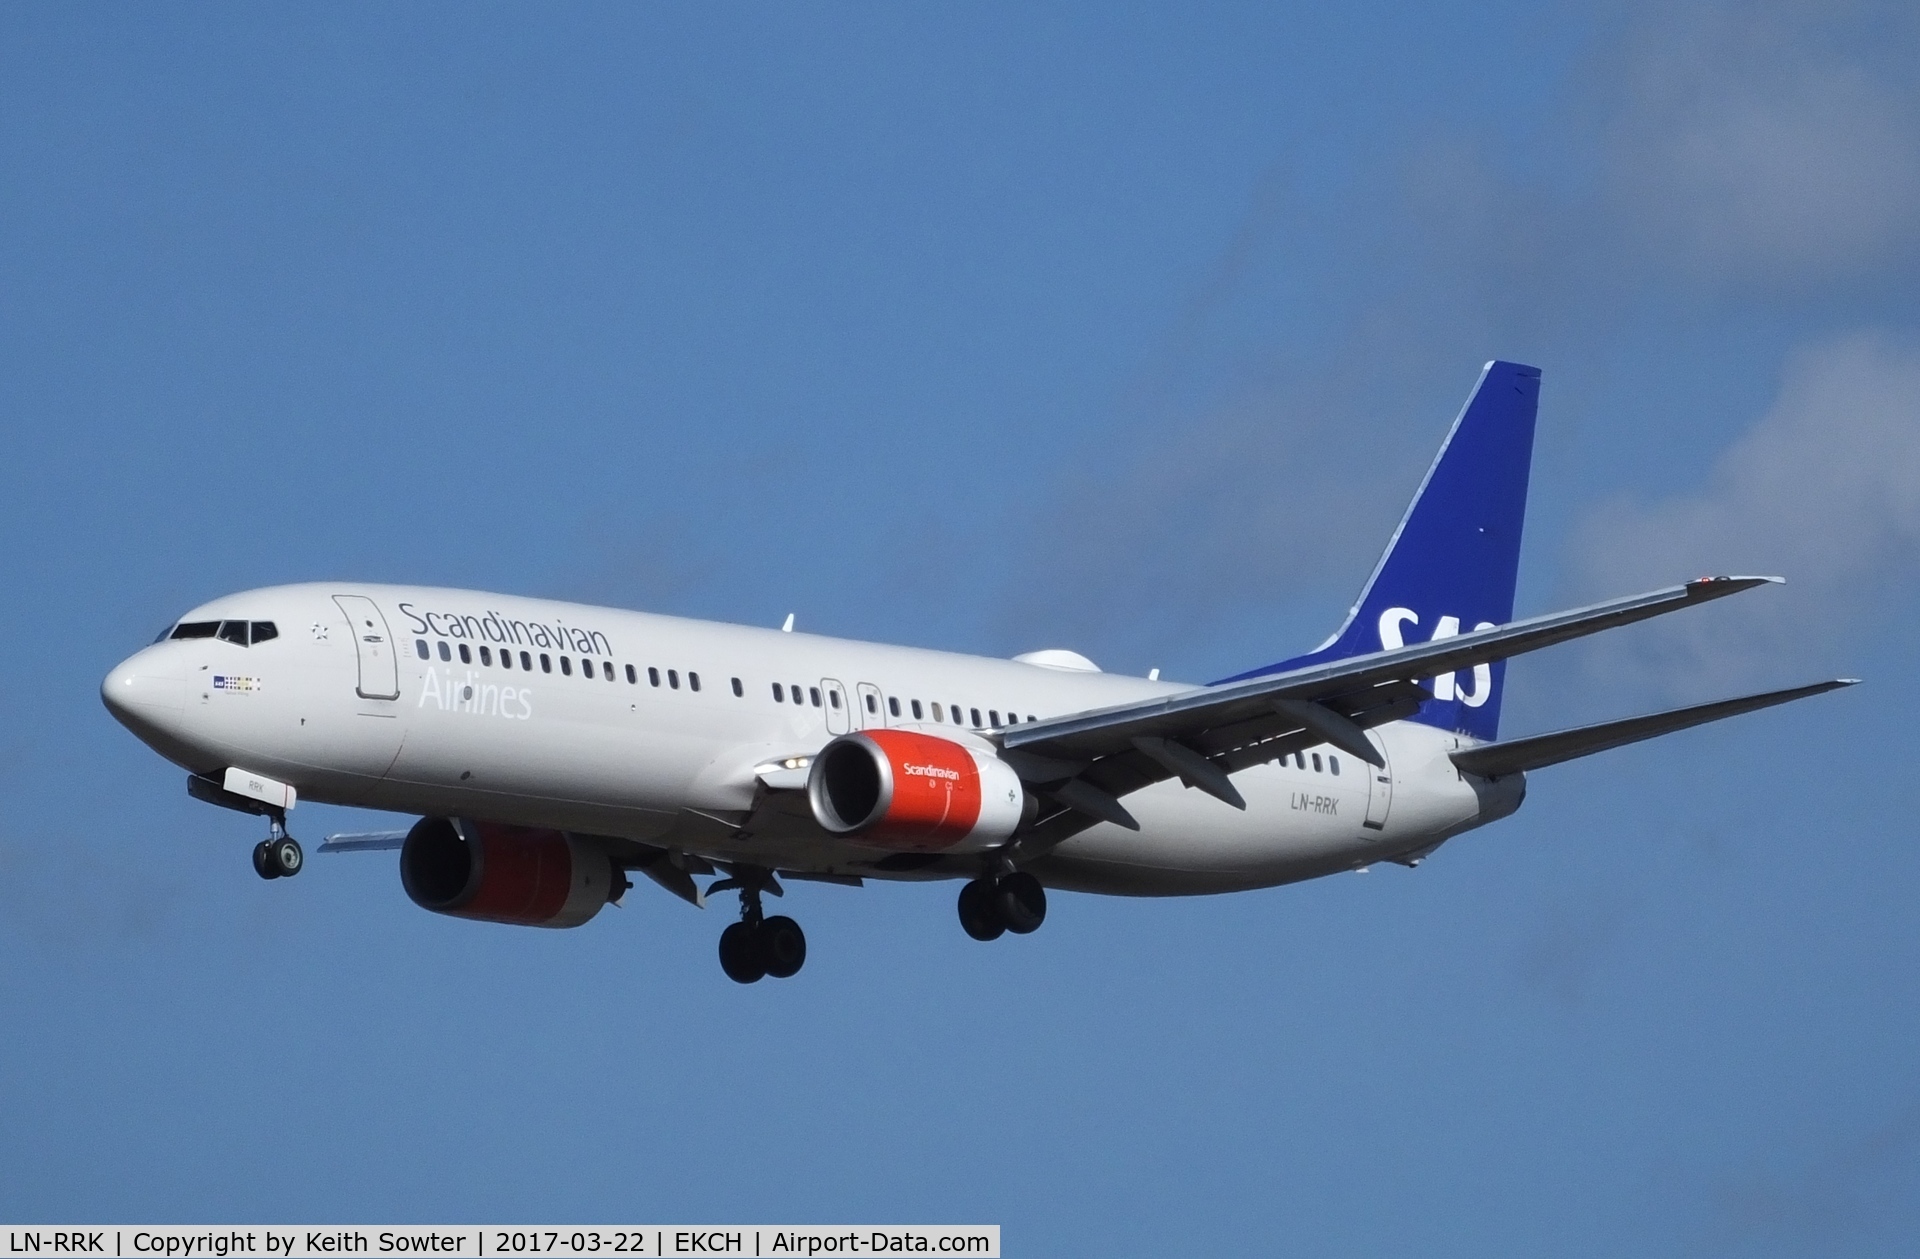 LN-RRK, 2002 Boeing 737-883 C/N 32278, Short finals to land